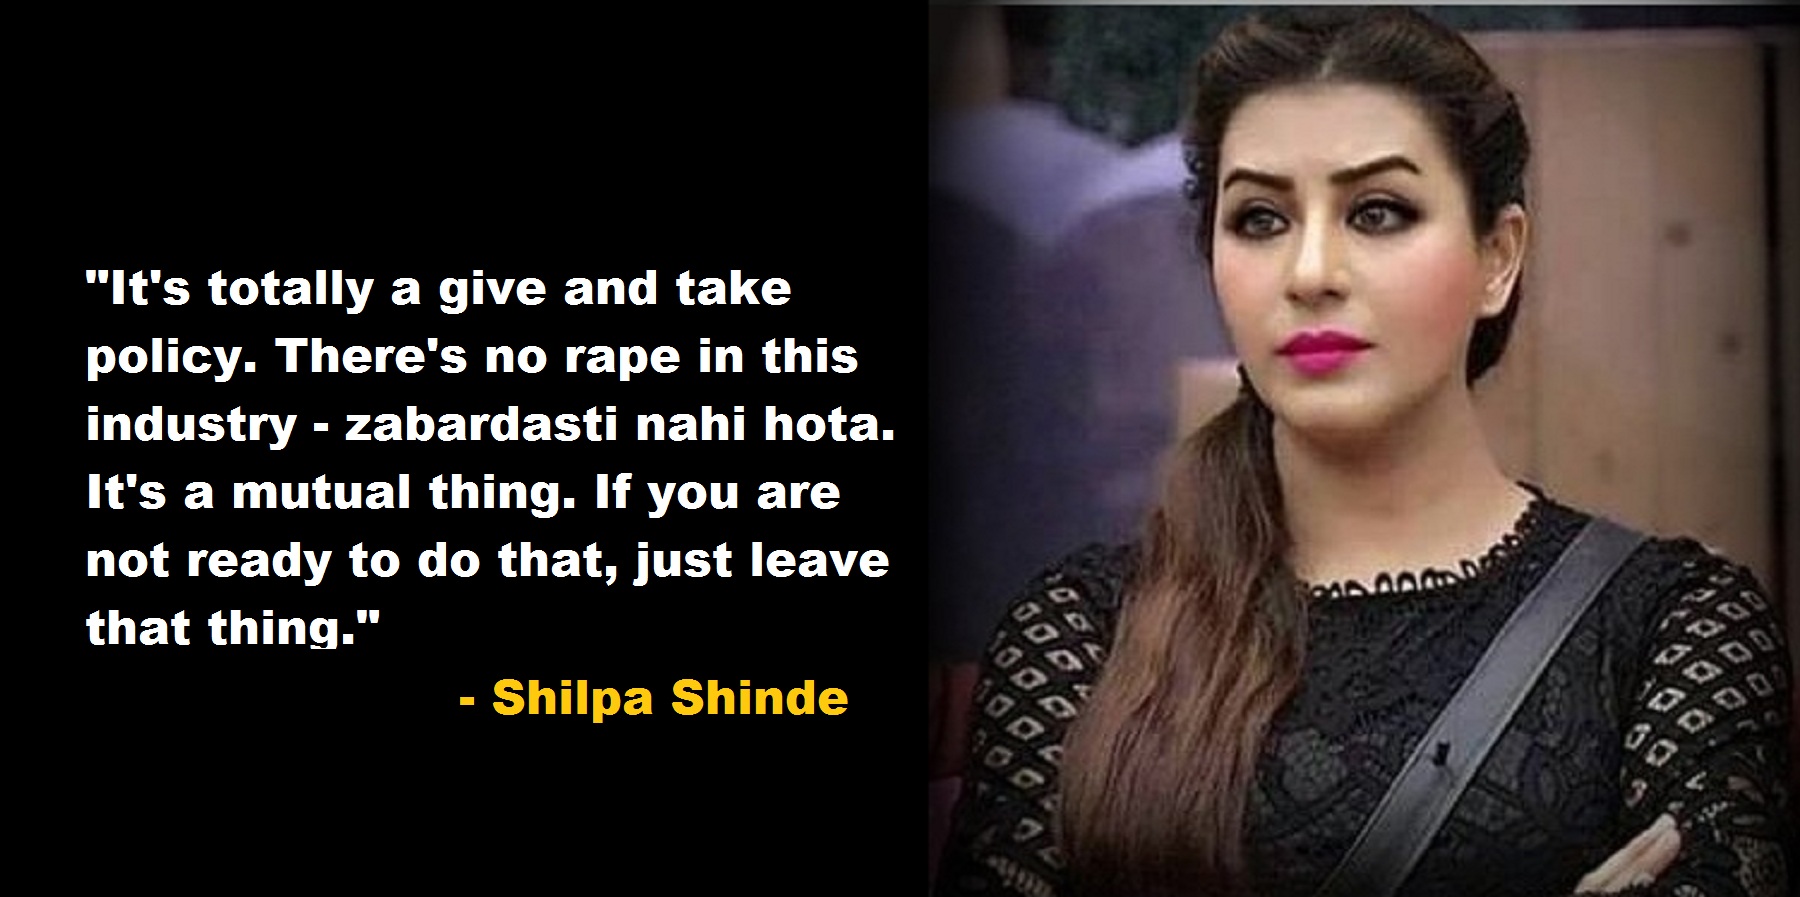 Shilpa Shinde Calls the #MeToo Movement “Rubbish”. Says, “Zabardasti Kuch Nahi Hota”